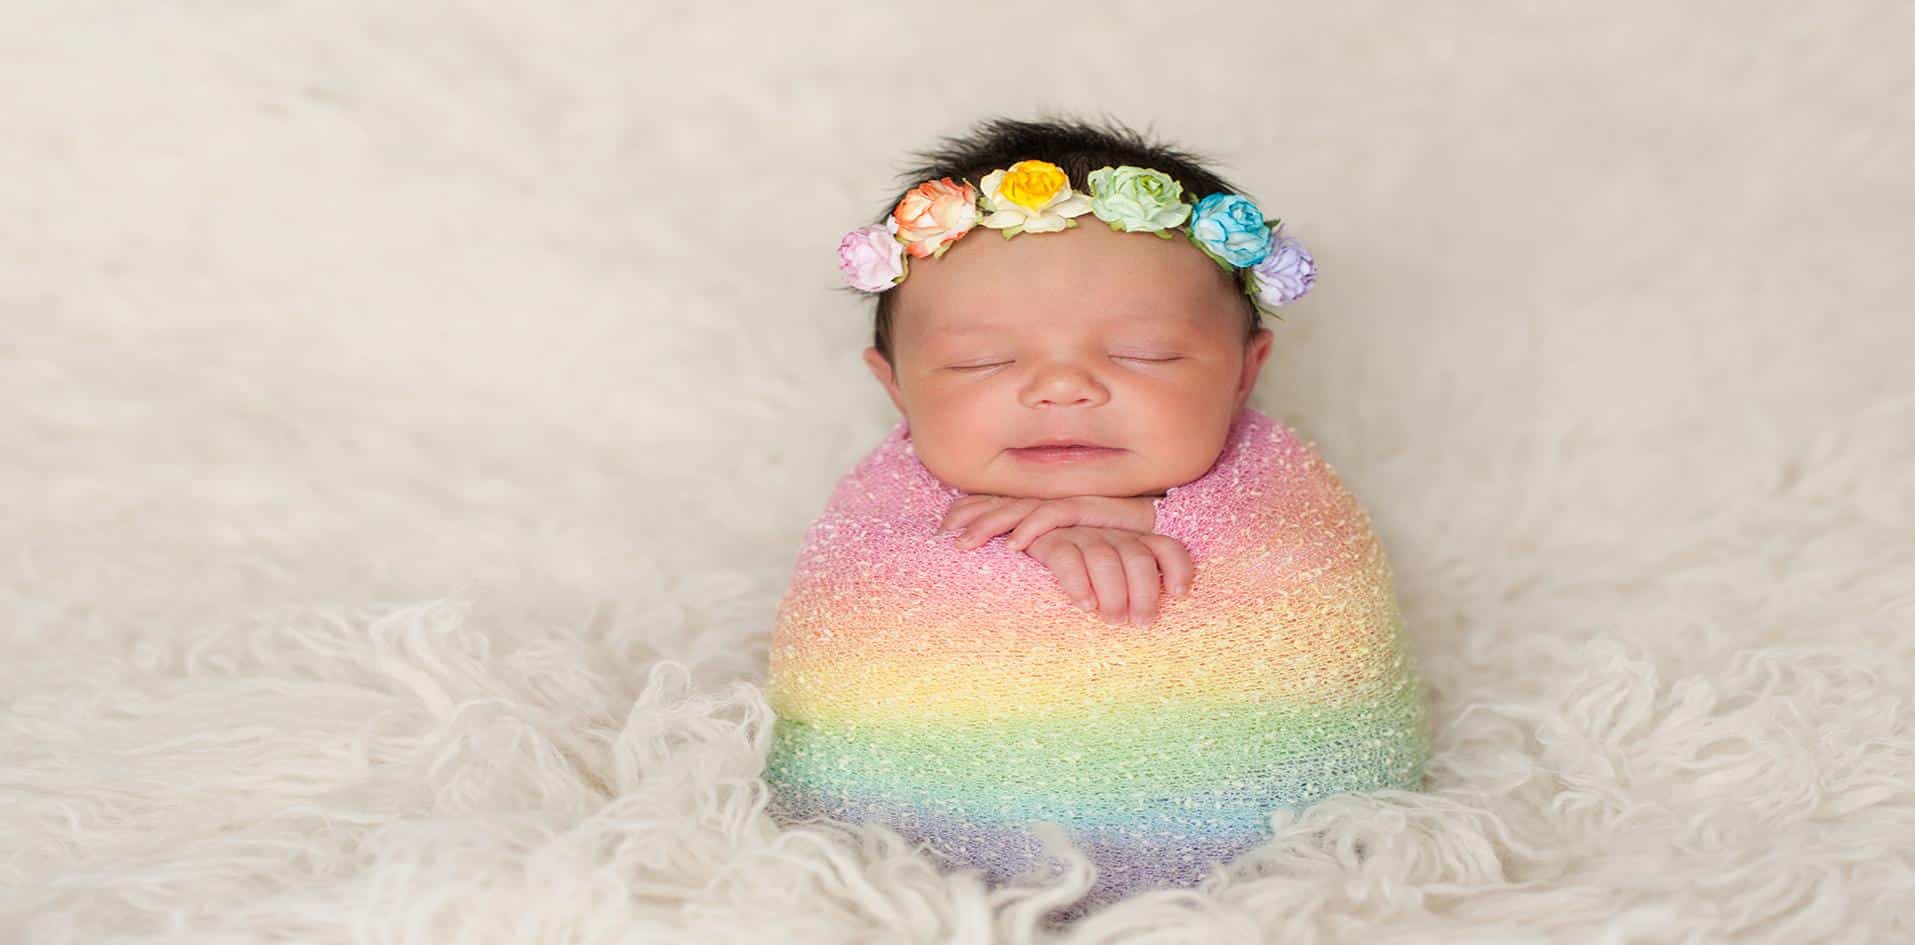 O significado por trás de "bebê arco-íris" pode resgatar a esperança por uma gravidez melhor